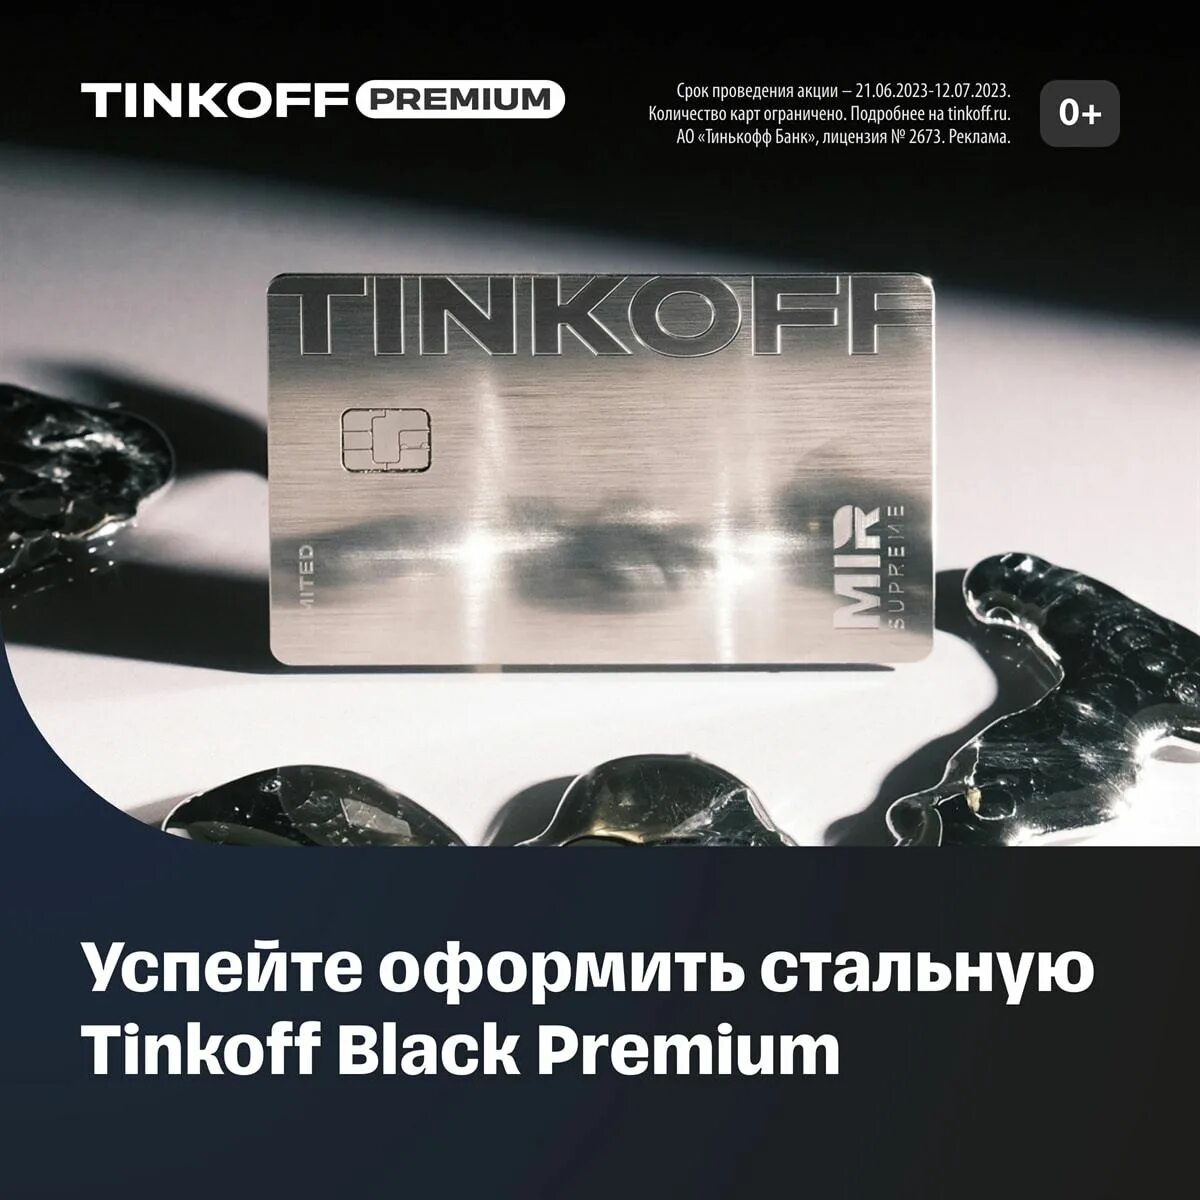 Премиум тинькофф банки. Тинькофф премиум металлическая. Тинькофф Блэк премиум. Tinkoff Black Premium Metal. Tinkoff Premium карта.